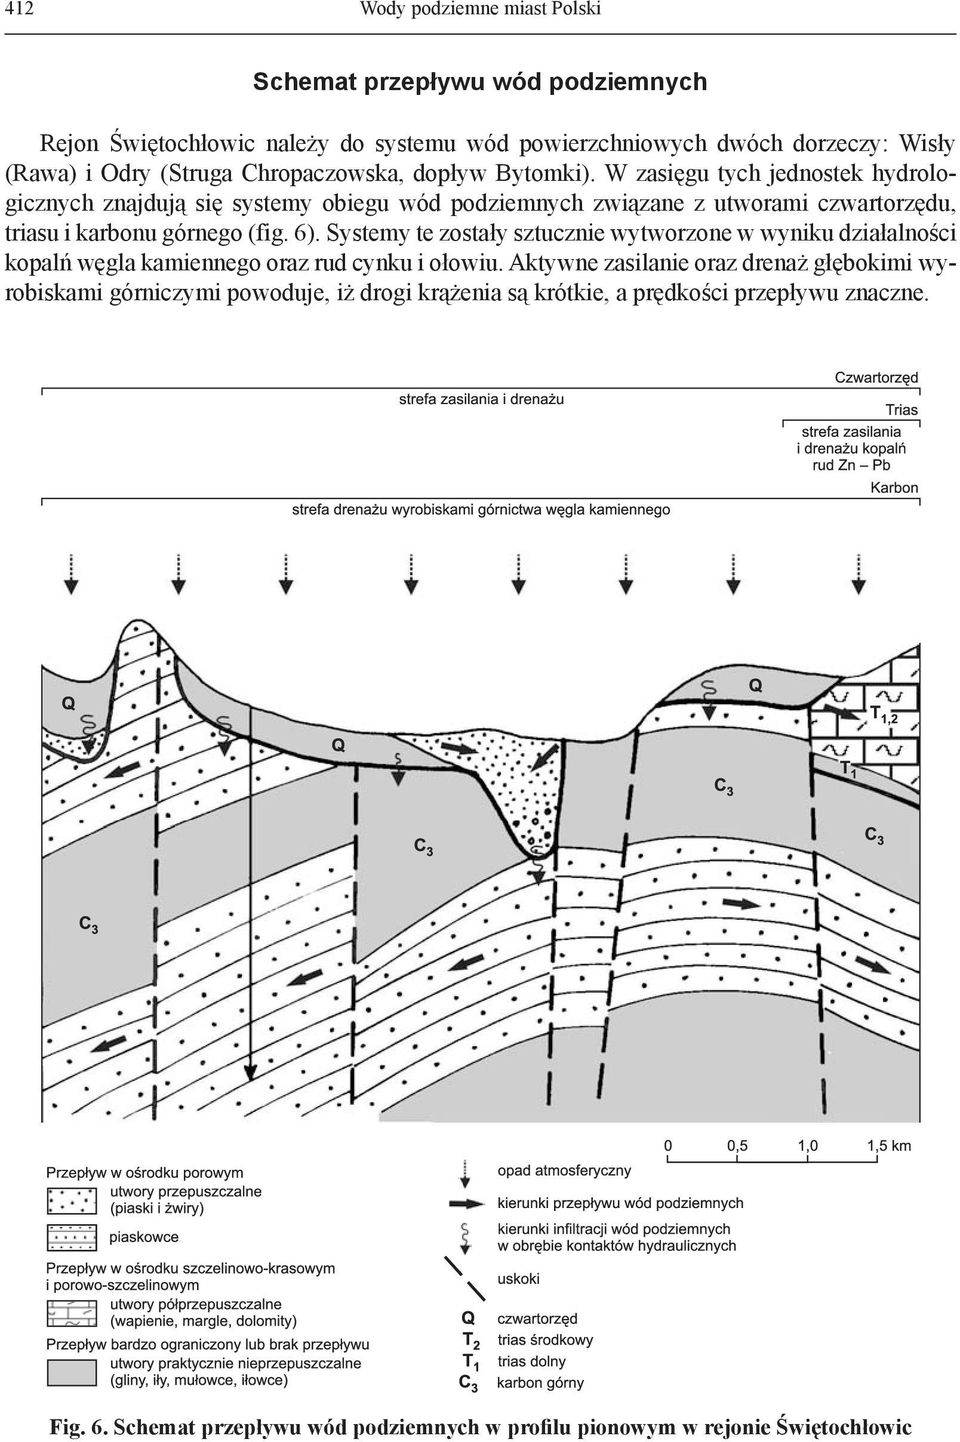 W zasięgu tych jednostek hydrologicznych znajdują się systemy obiegu wód podziemnych związane z utworami czwartorzędu, triasu i karbonu górnego (fig. 6).